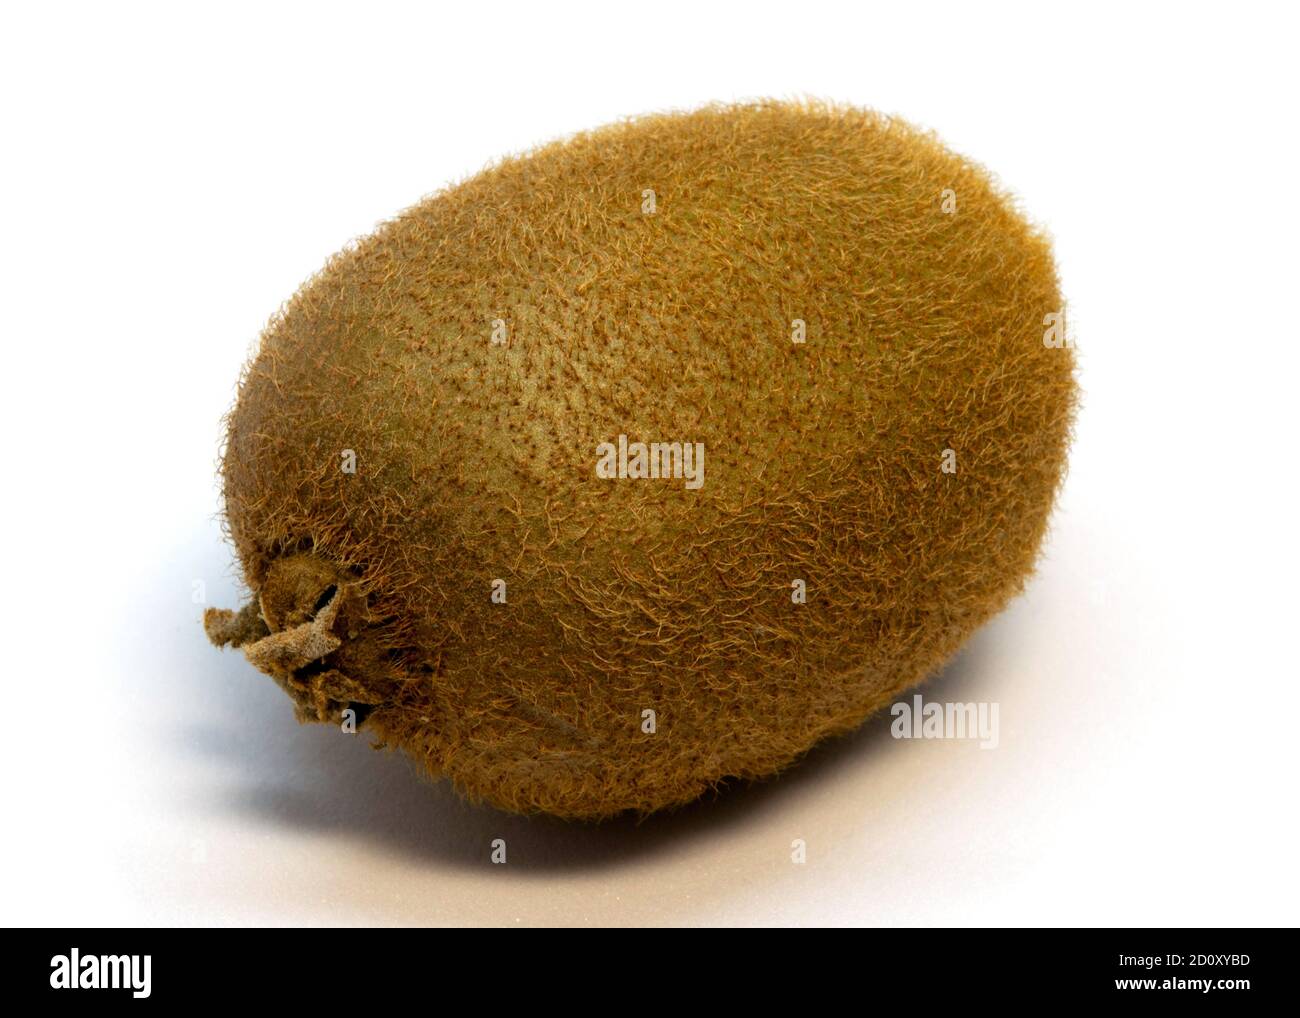 Kiwi fruit isolated on white background close-up Stock Photo